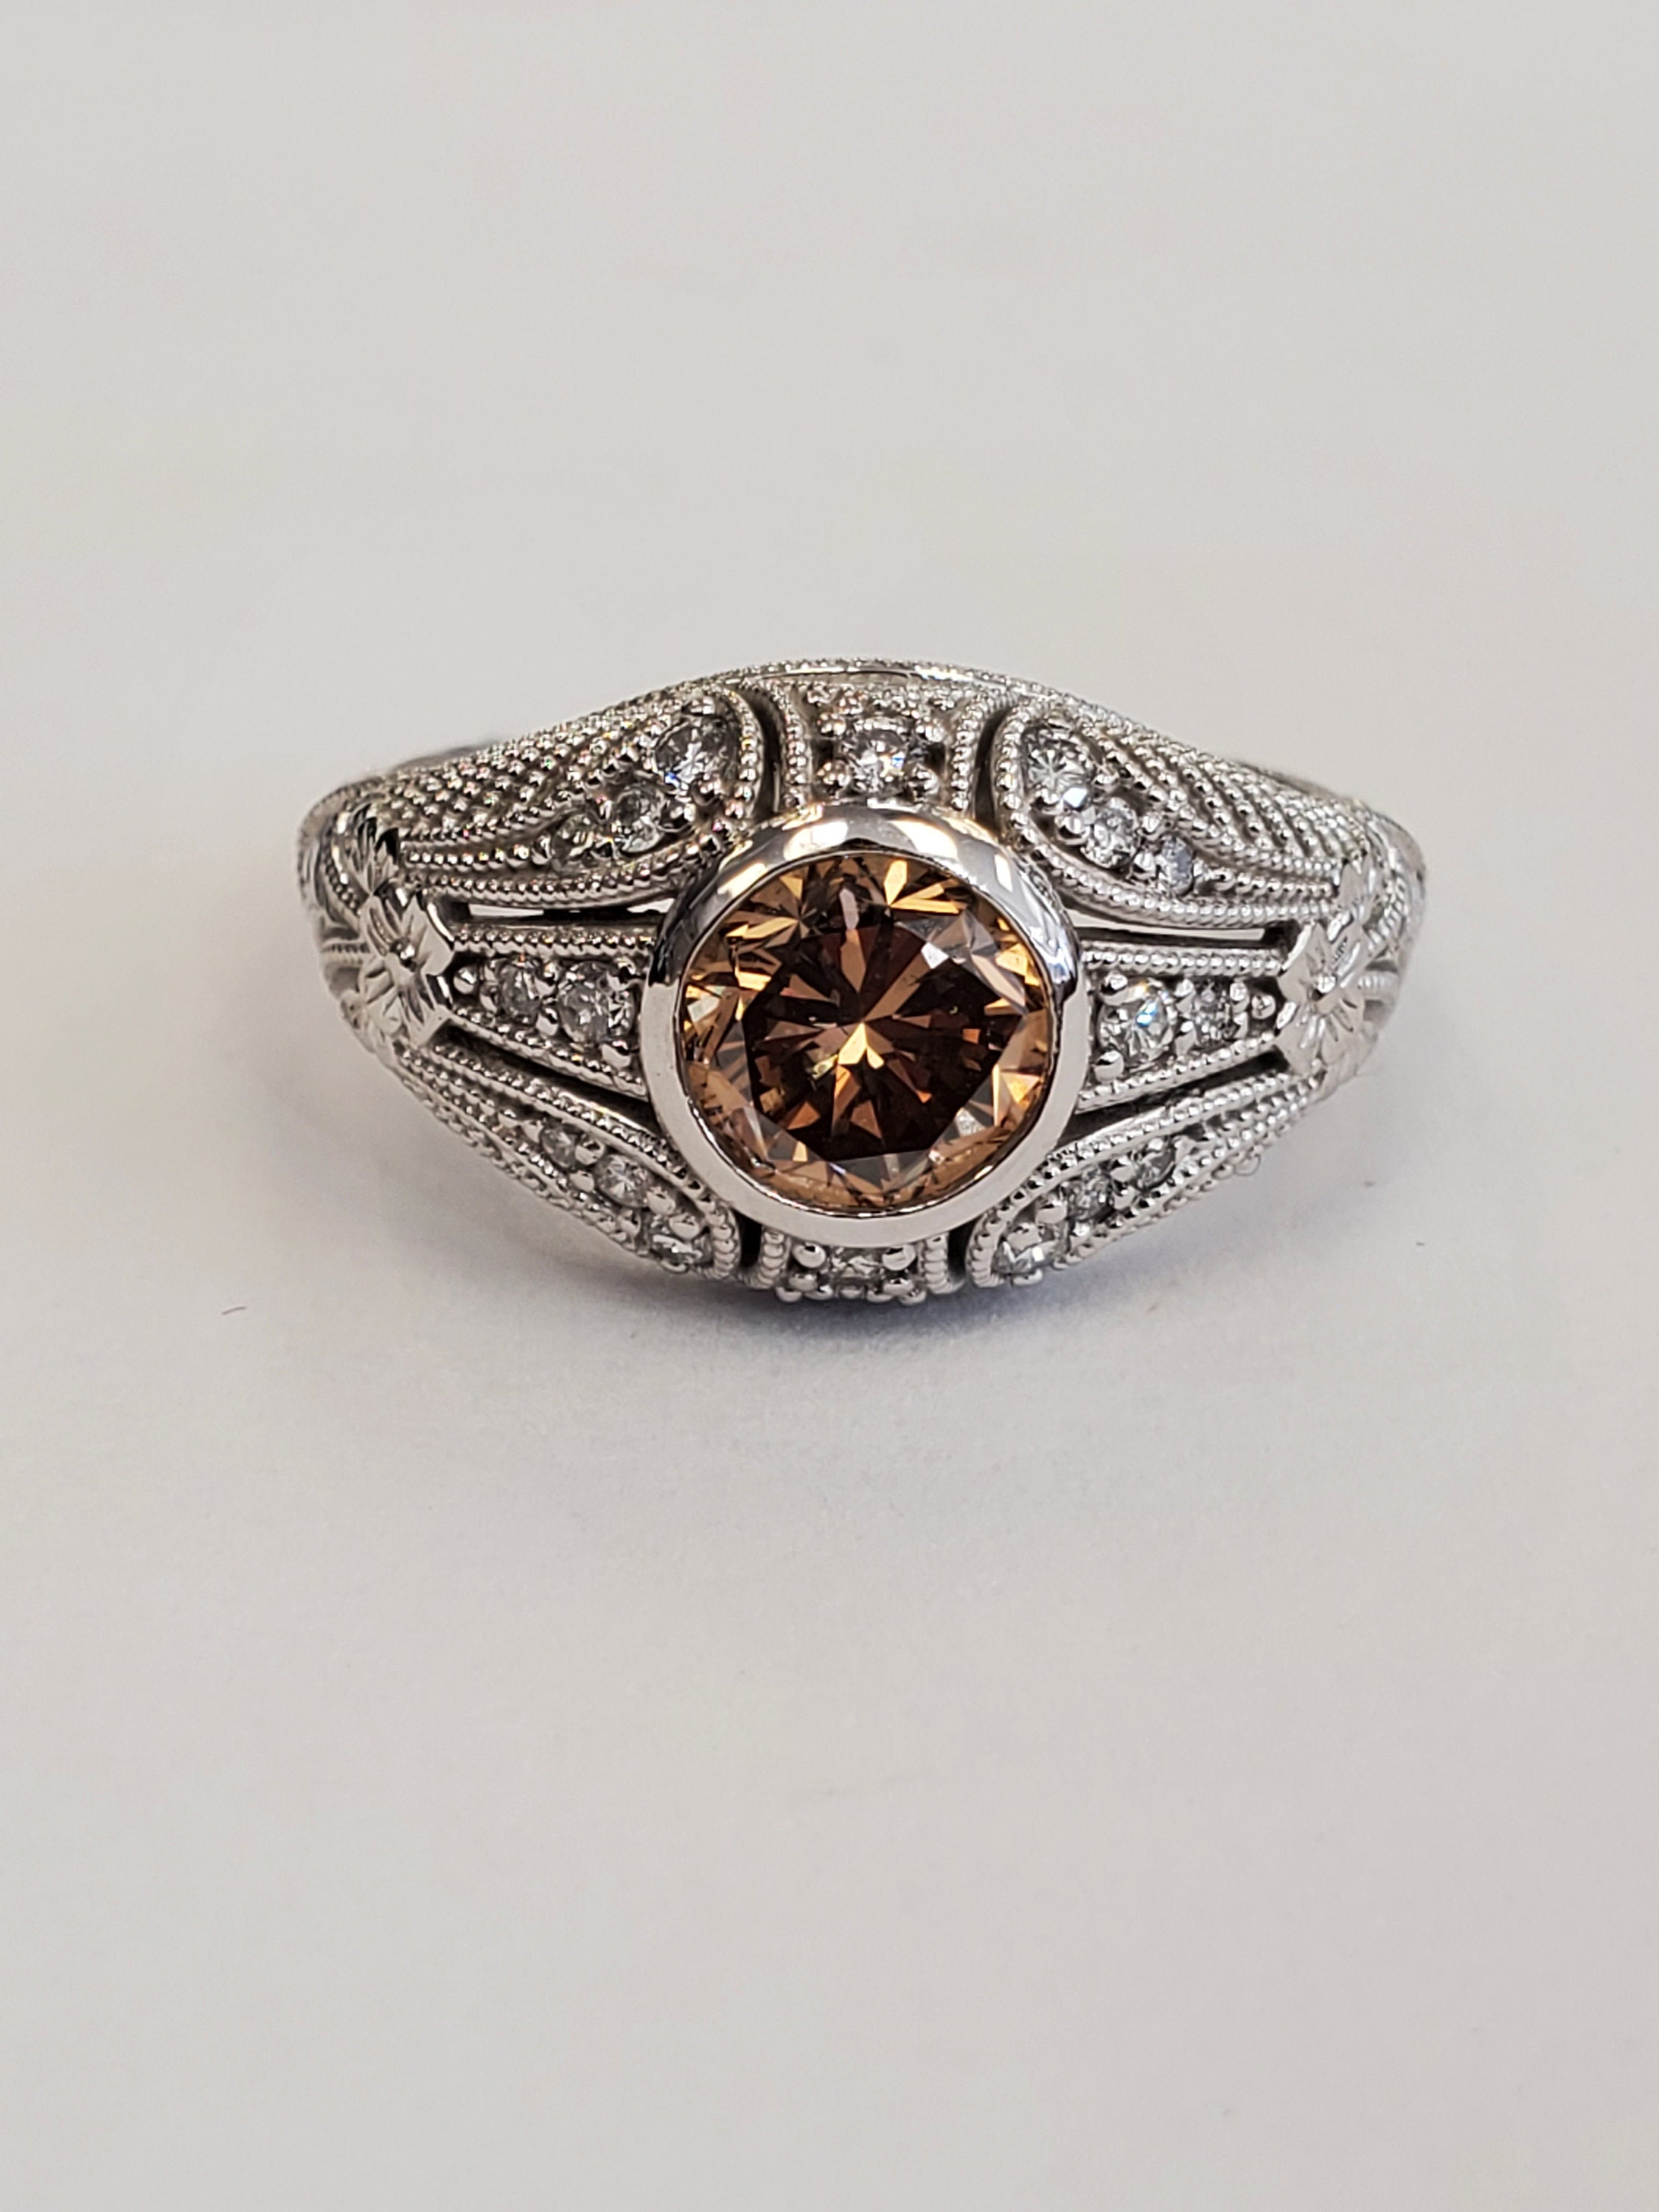 1.02ct Cognac Brown Diamond Filigree Ring 14k White Gold Size 6.5